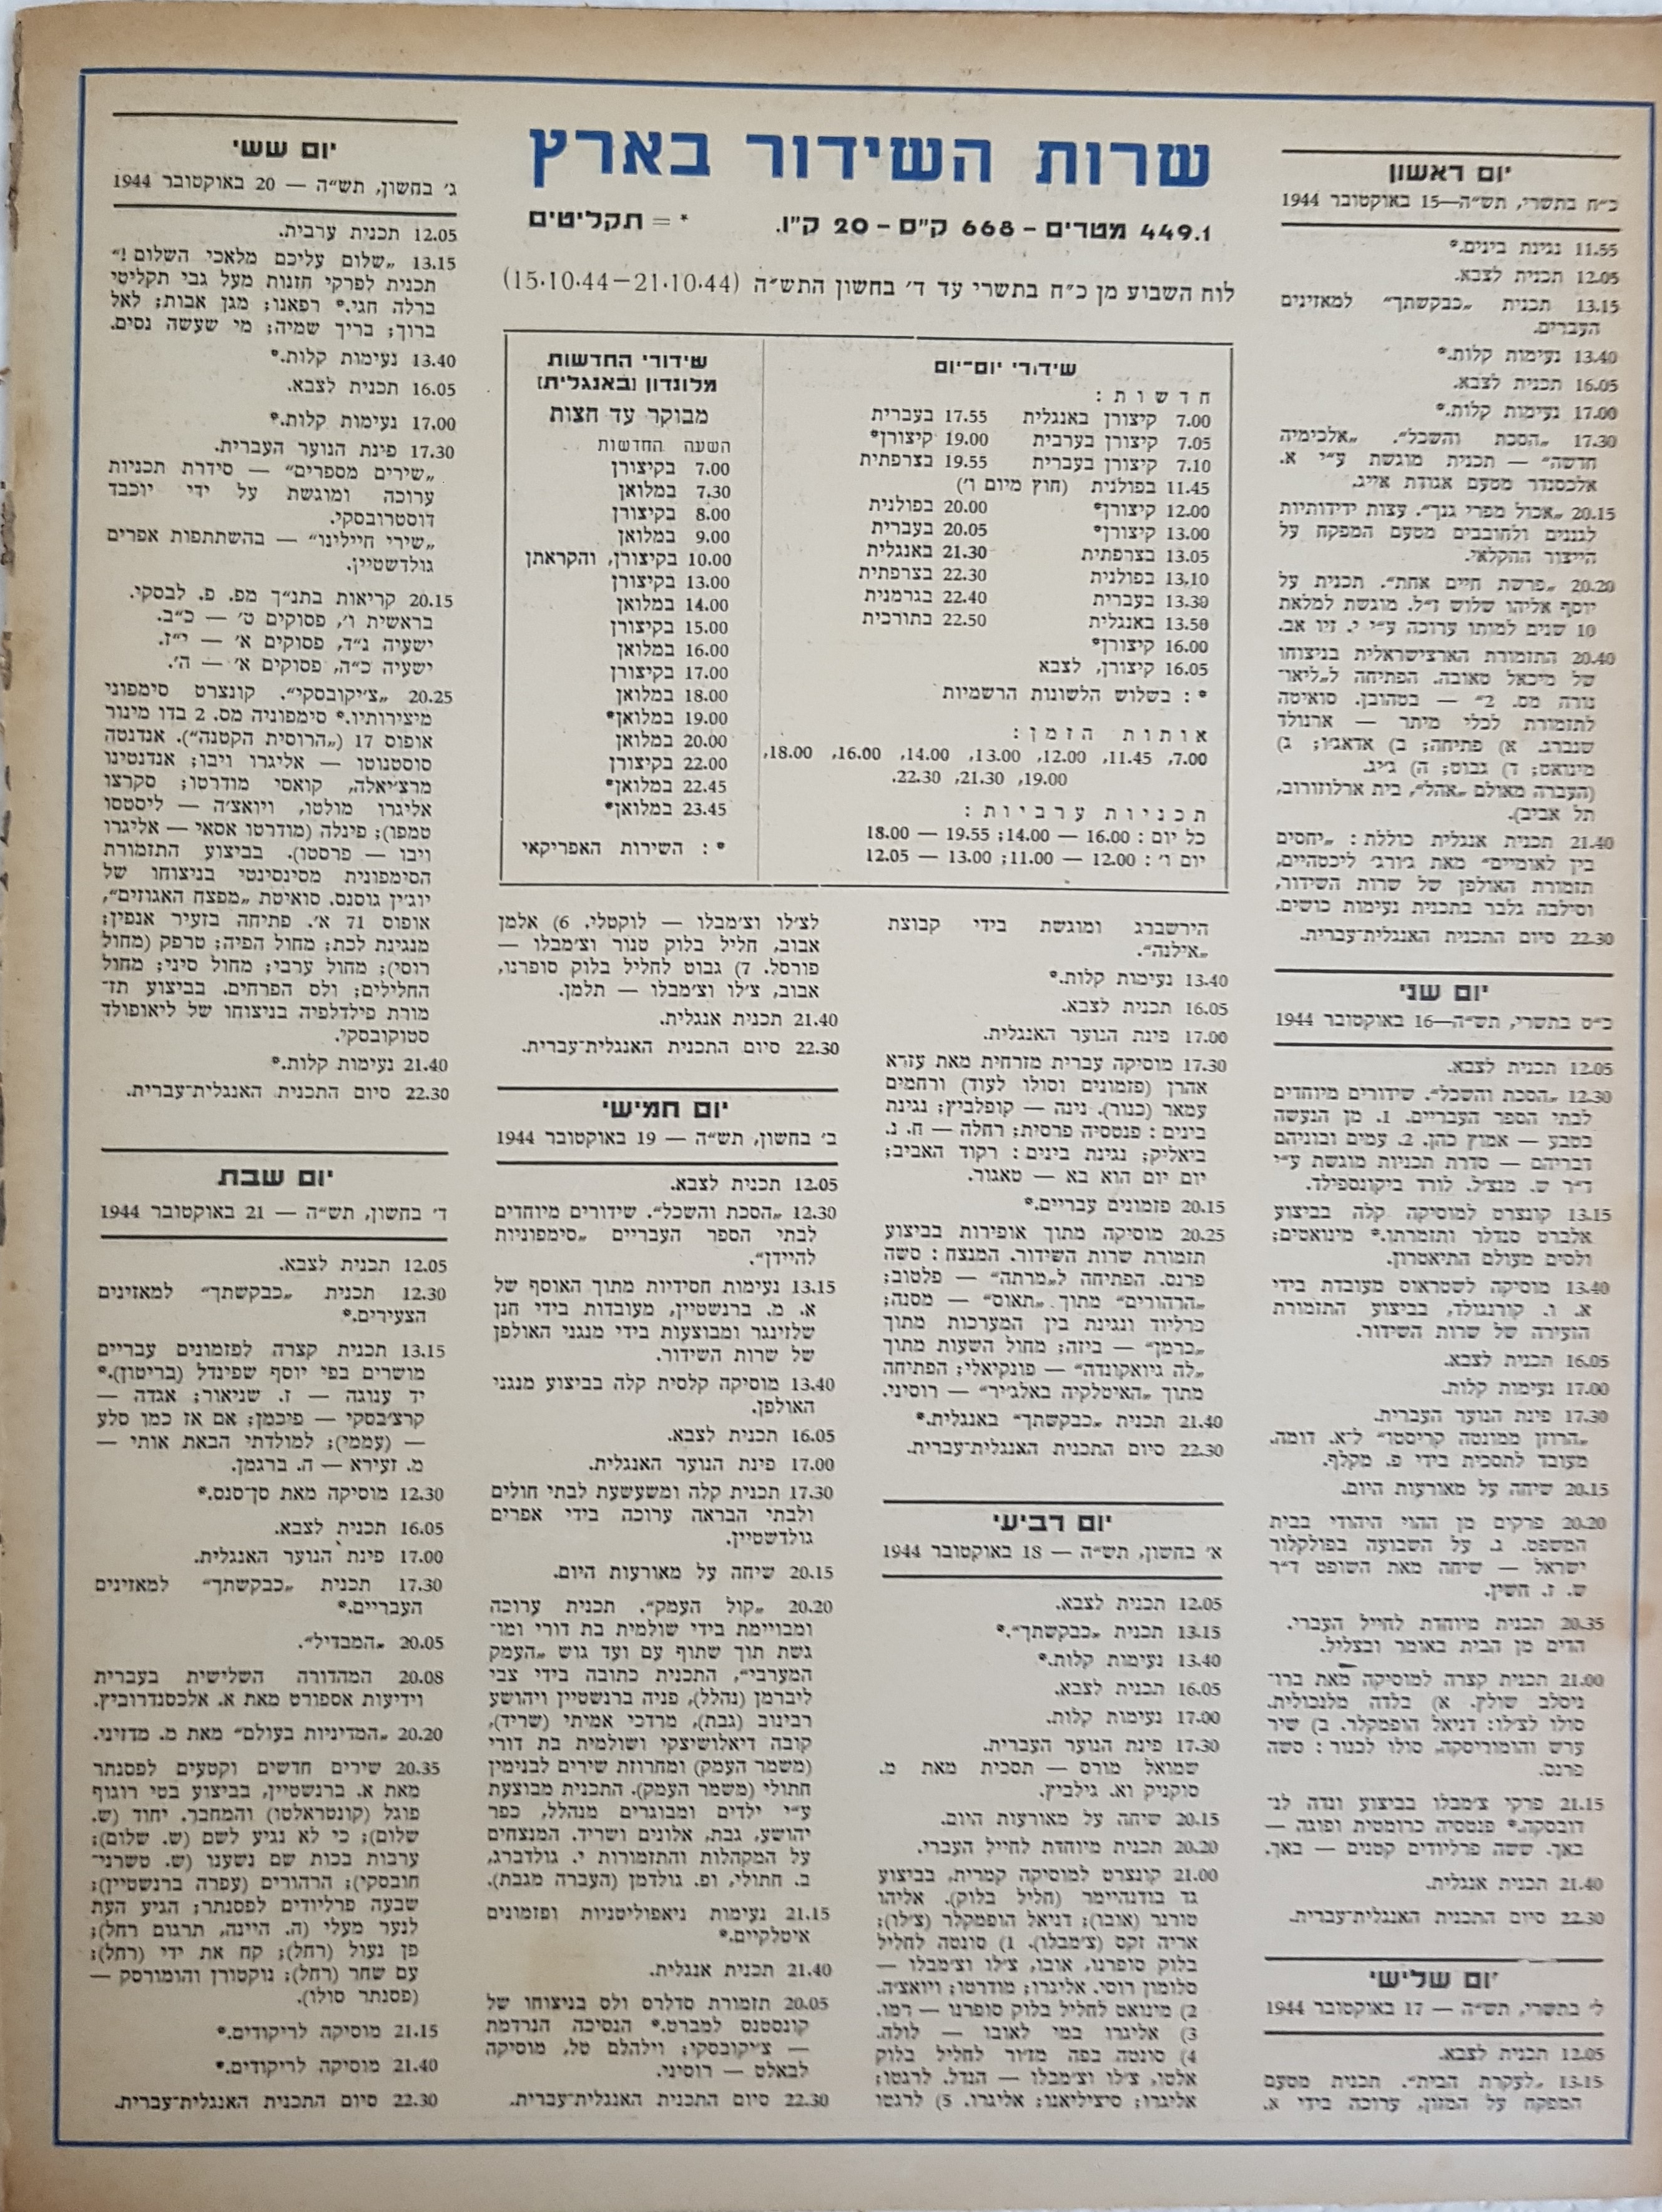 Radio Schedule: October 15 - October 21, 1944